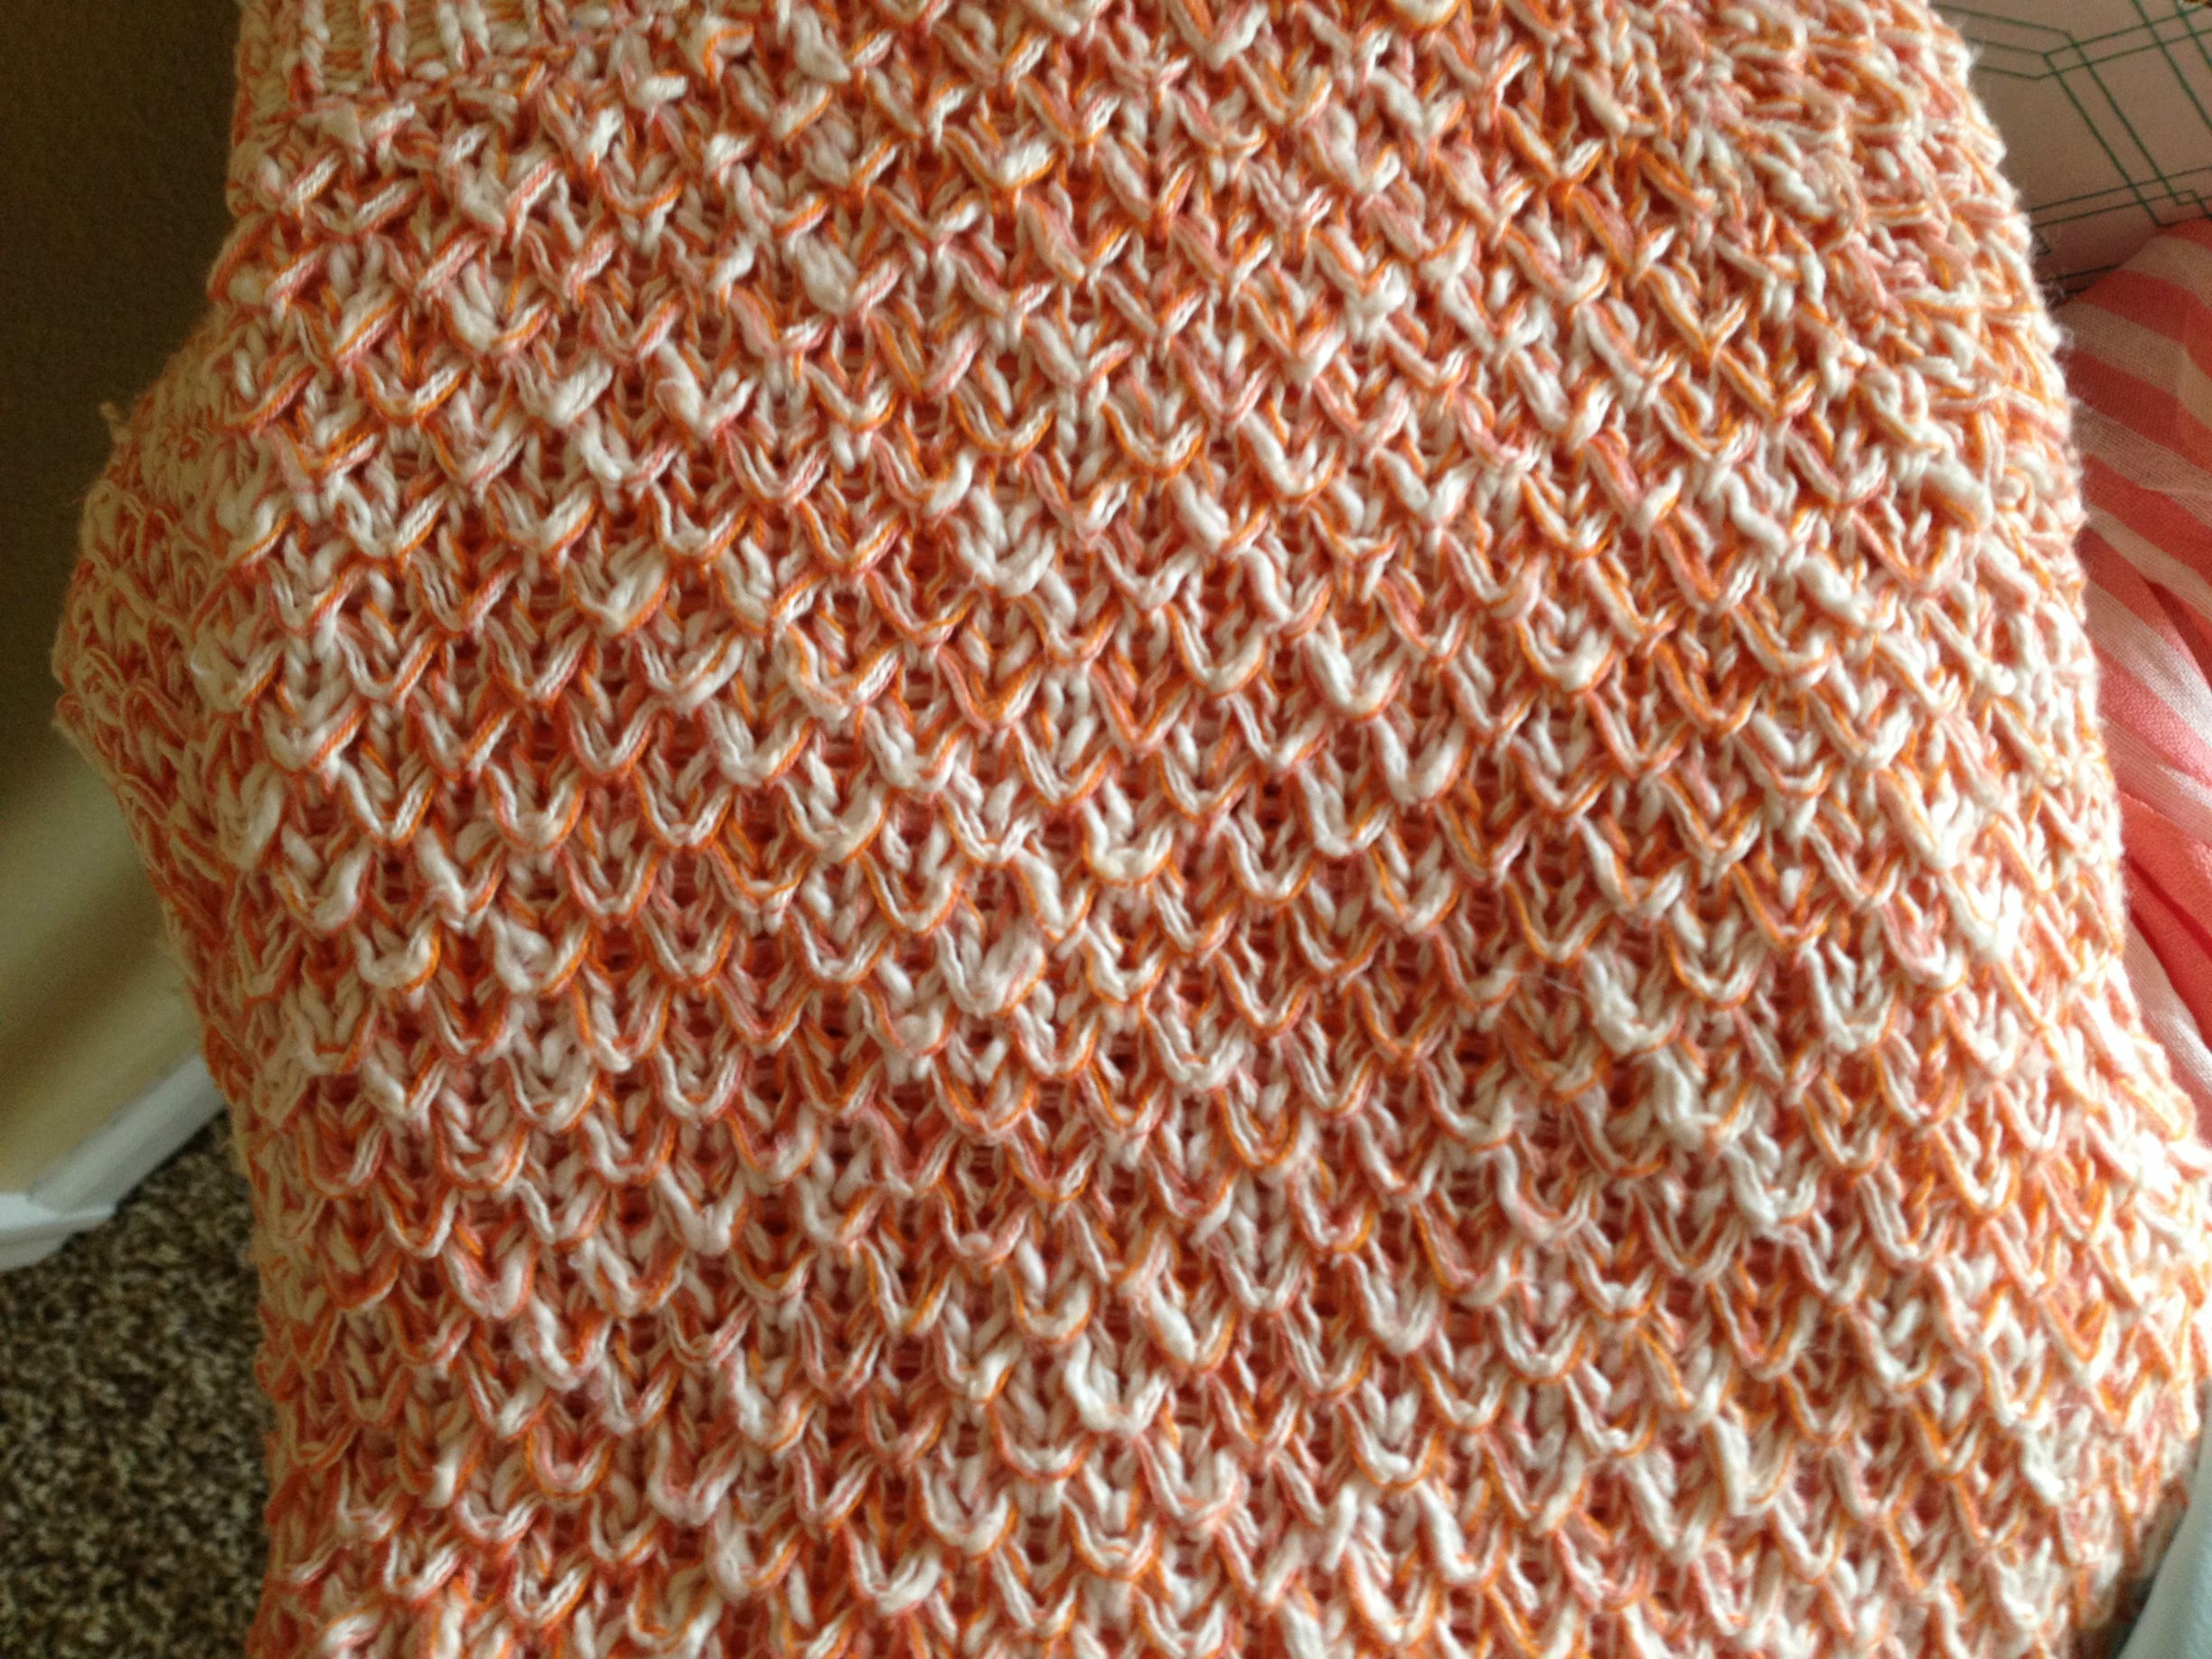 Honeycomb Knitting Stitch Pattern Can Anyone Identify This Knitting Stitch Pattern Knitstitch